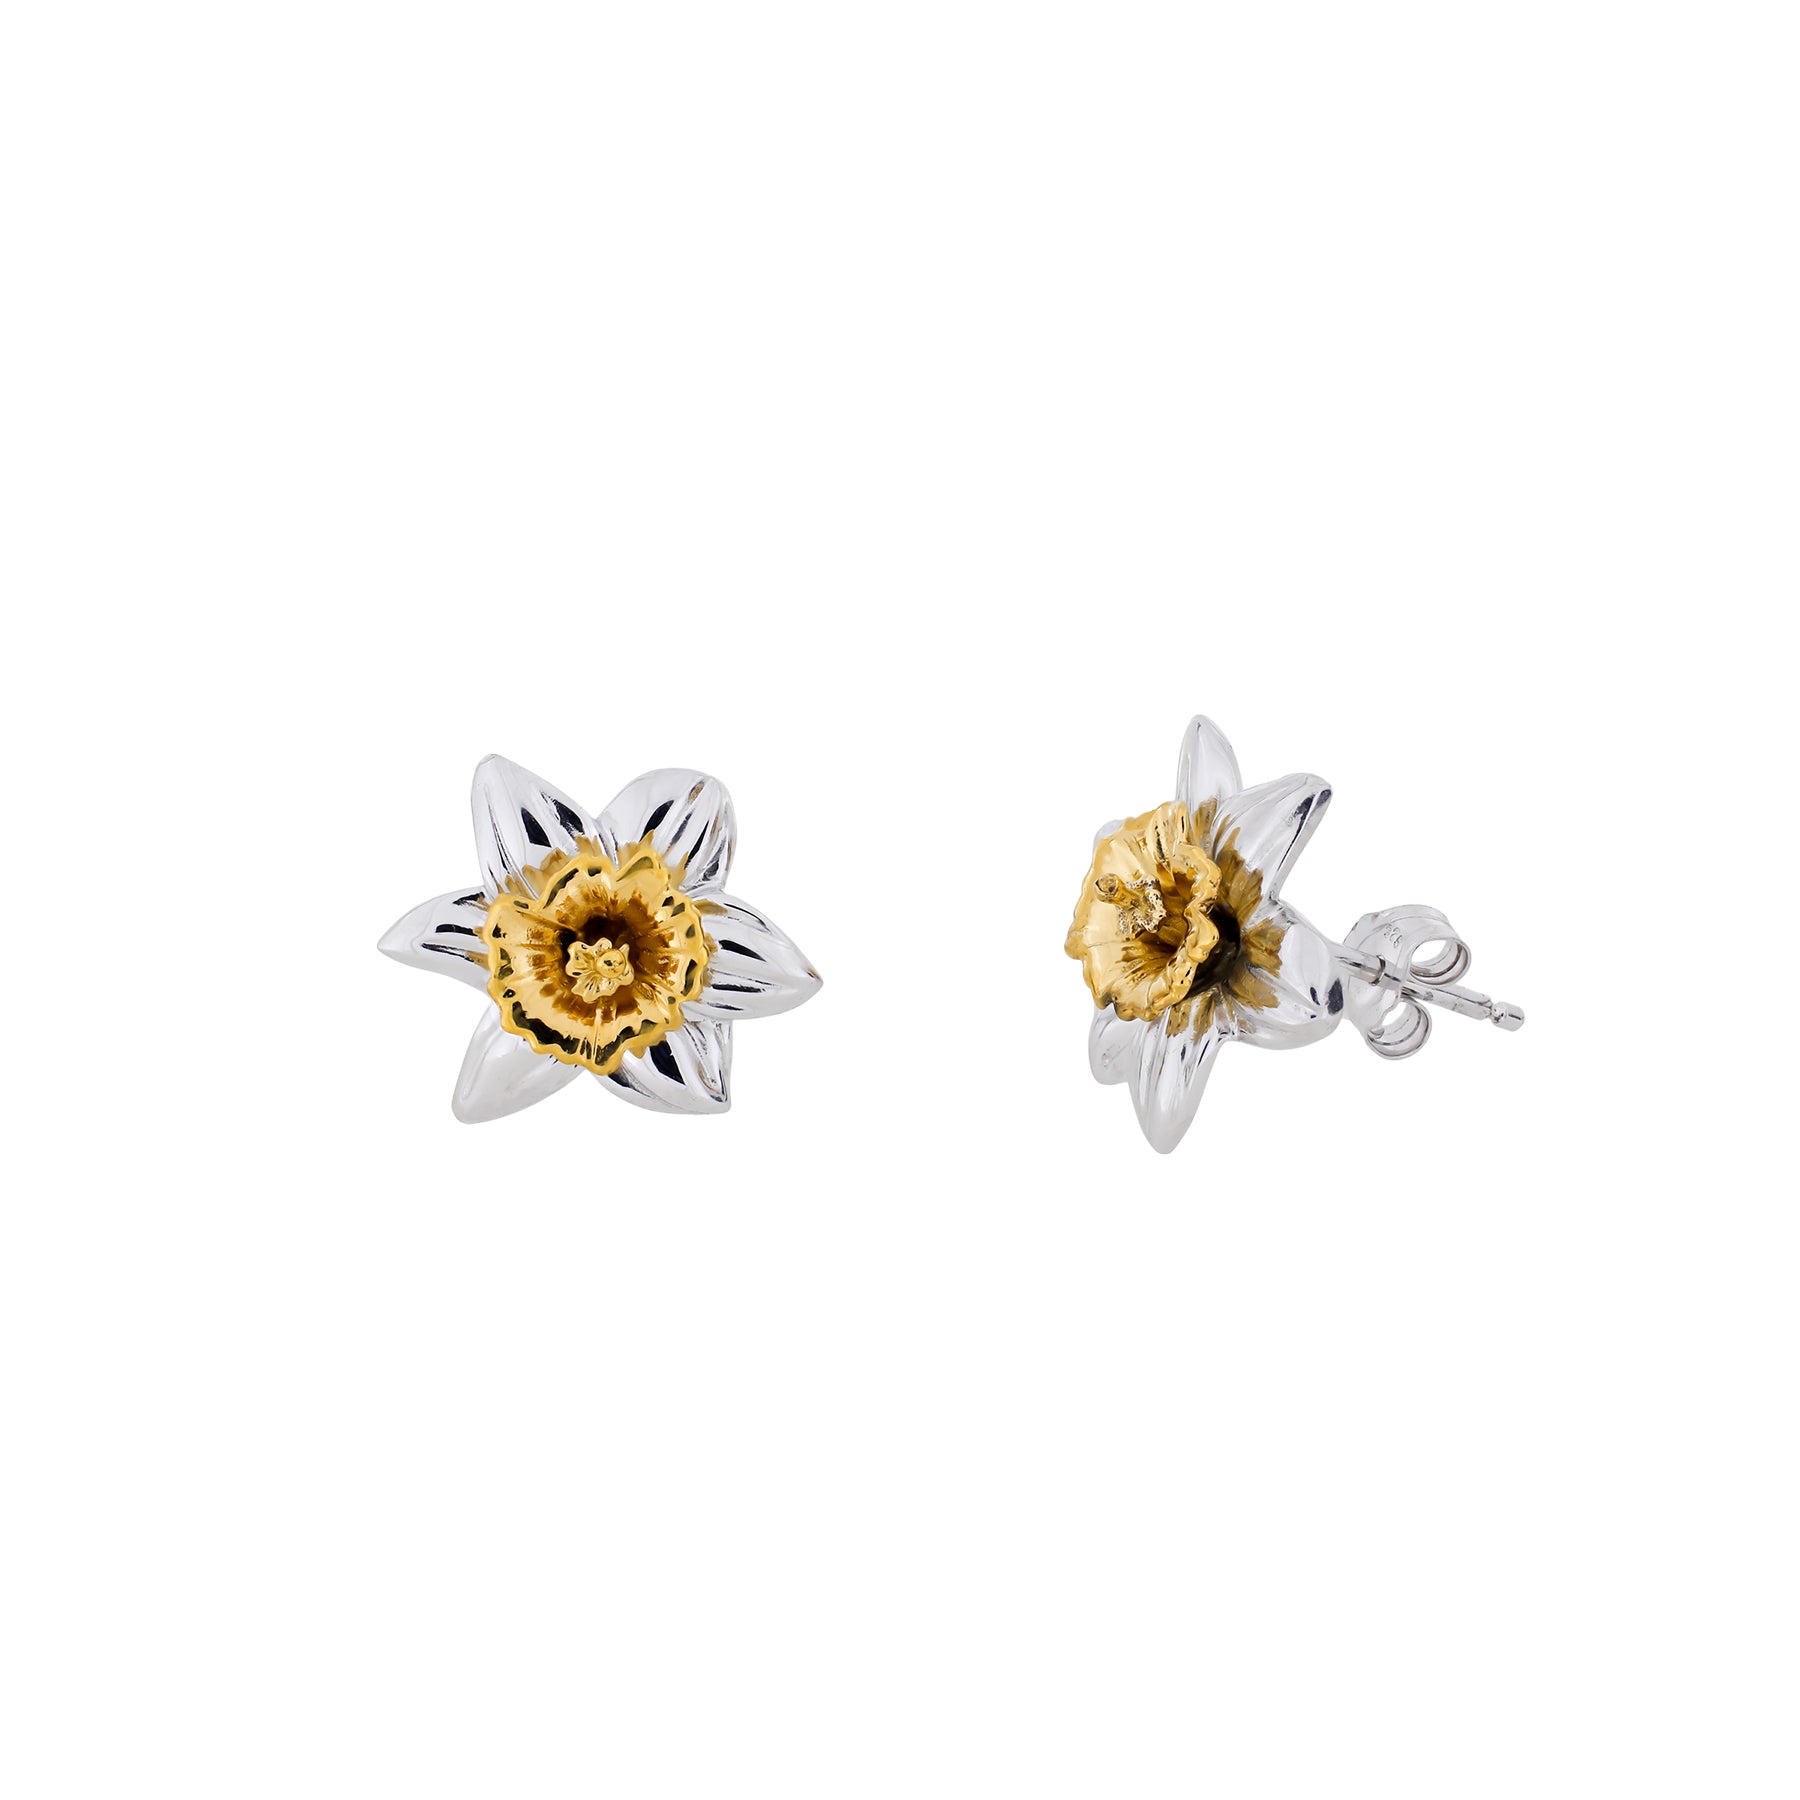 Daffodil March Birthday Flower Earrings